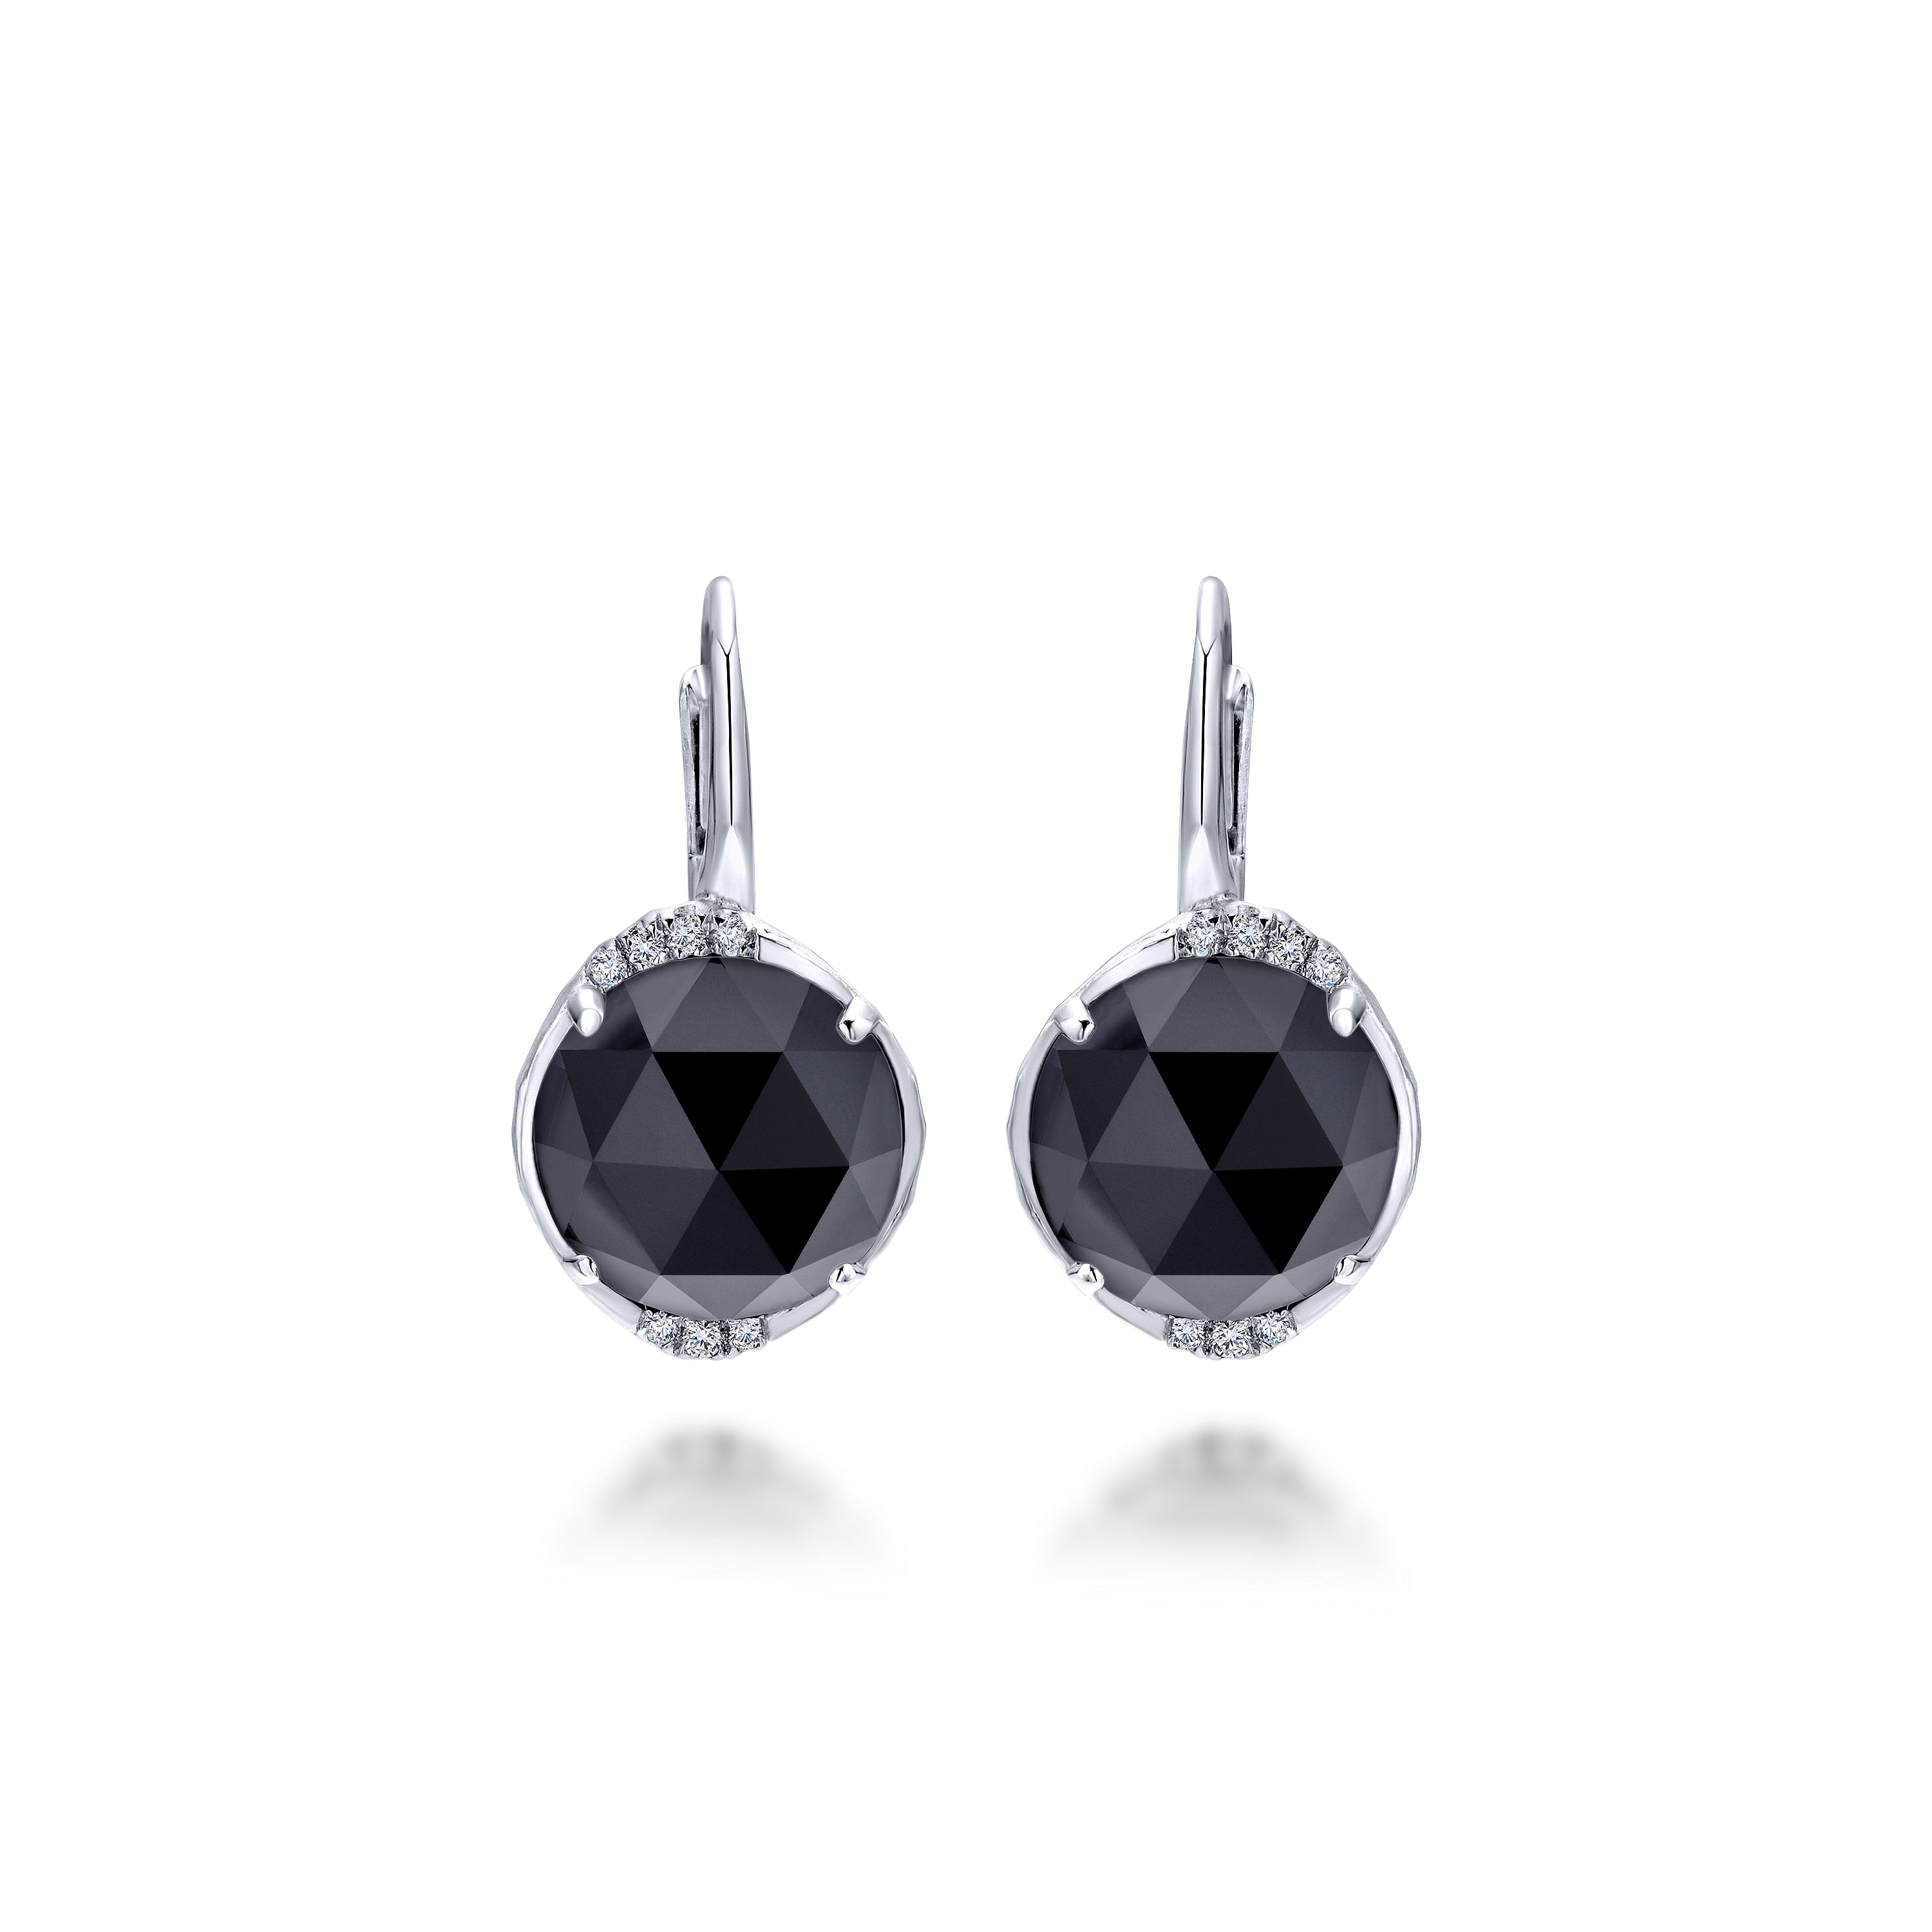 Sterling silver black onyx earrings